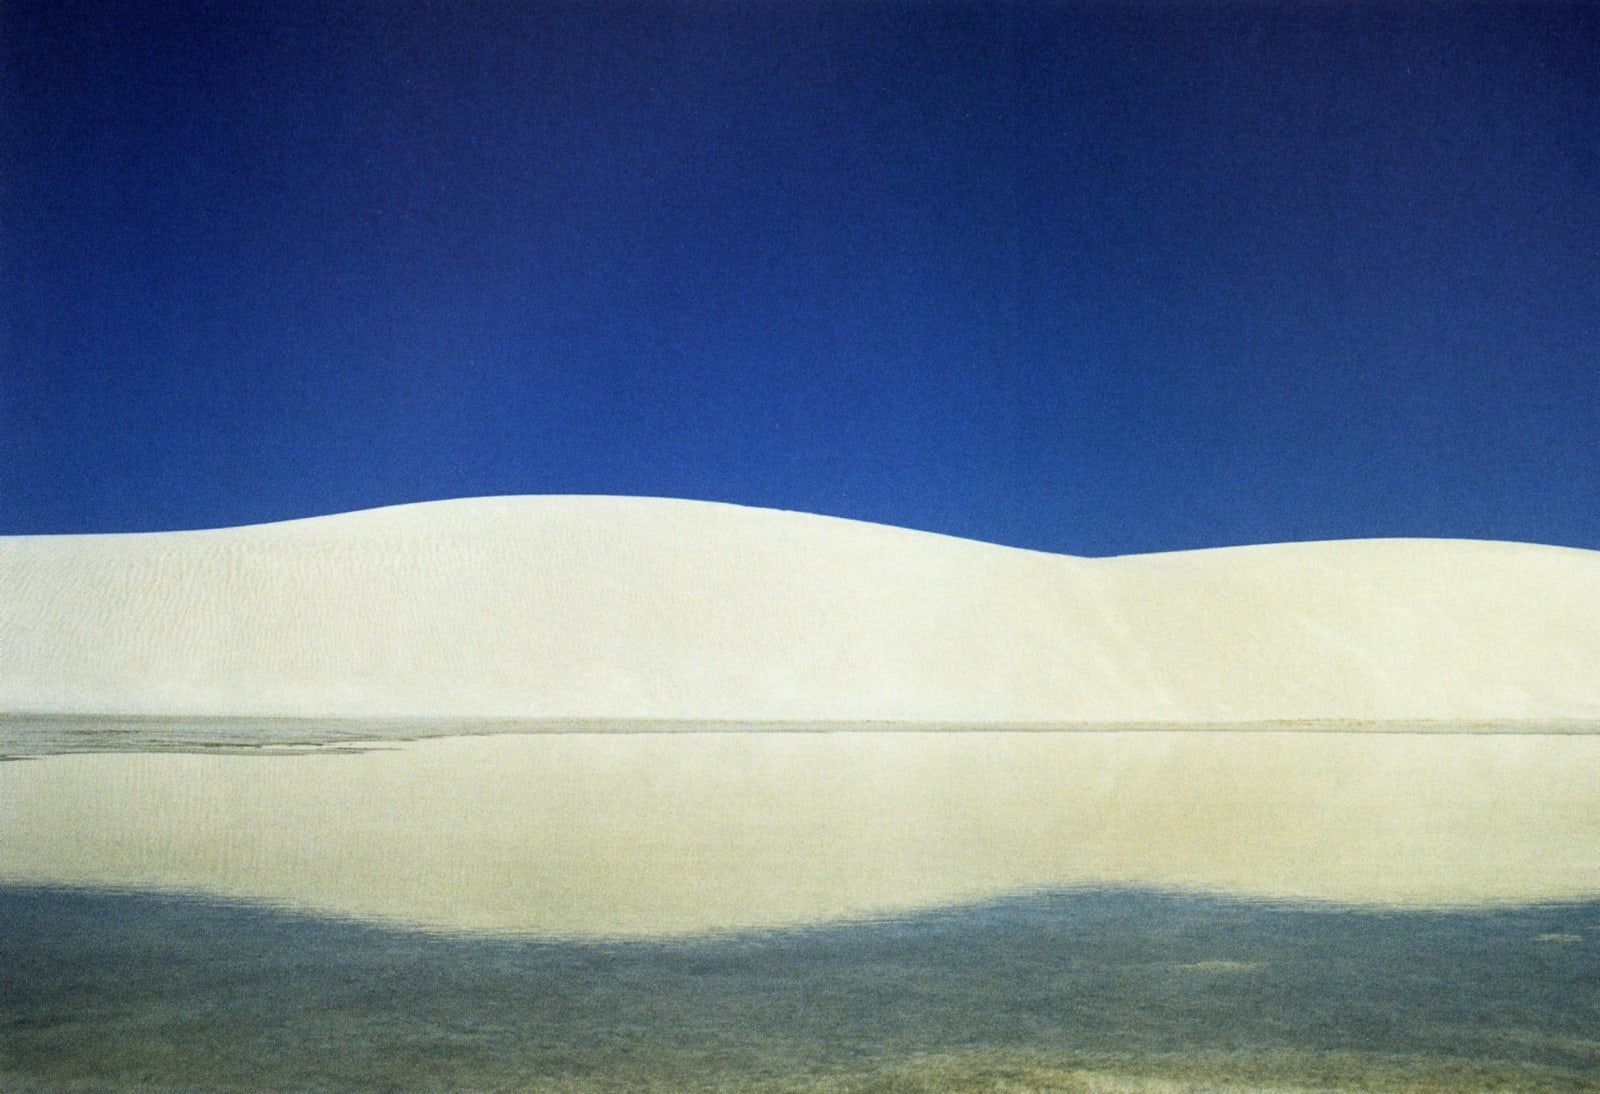 Franco Fontana, White Sands, New Mexico, 1983